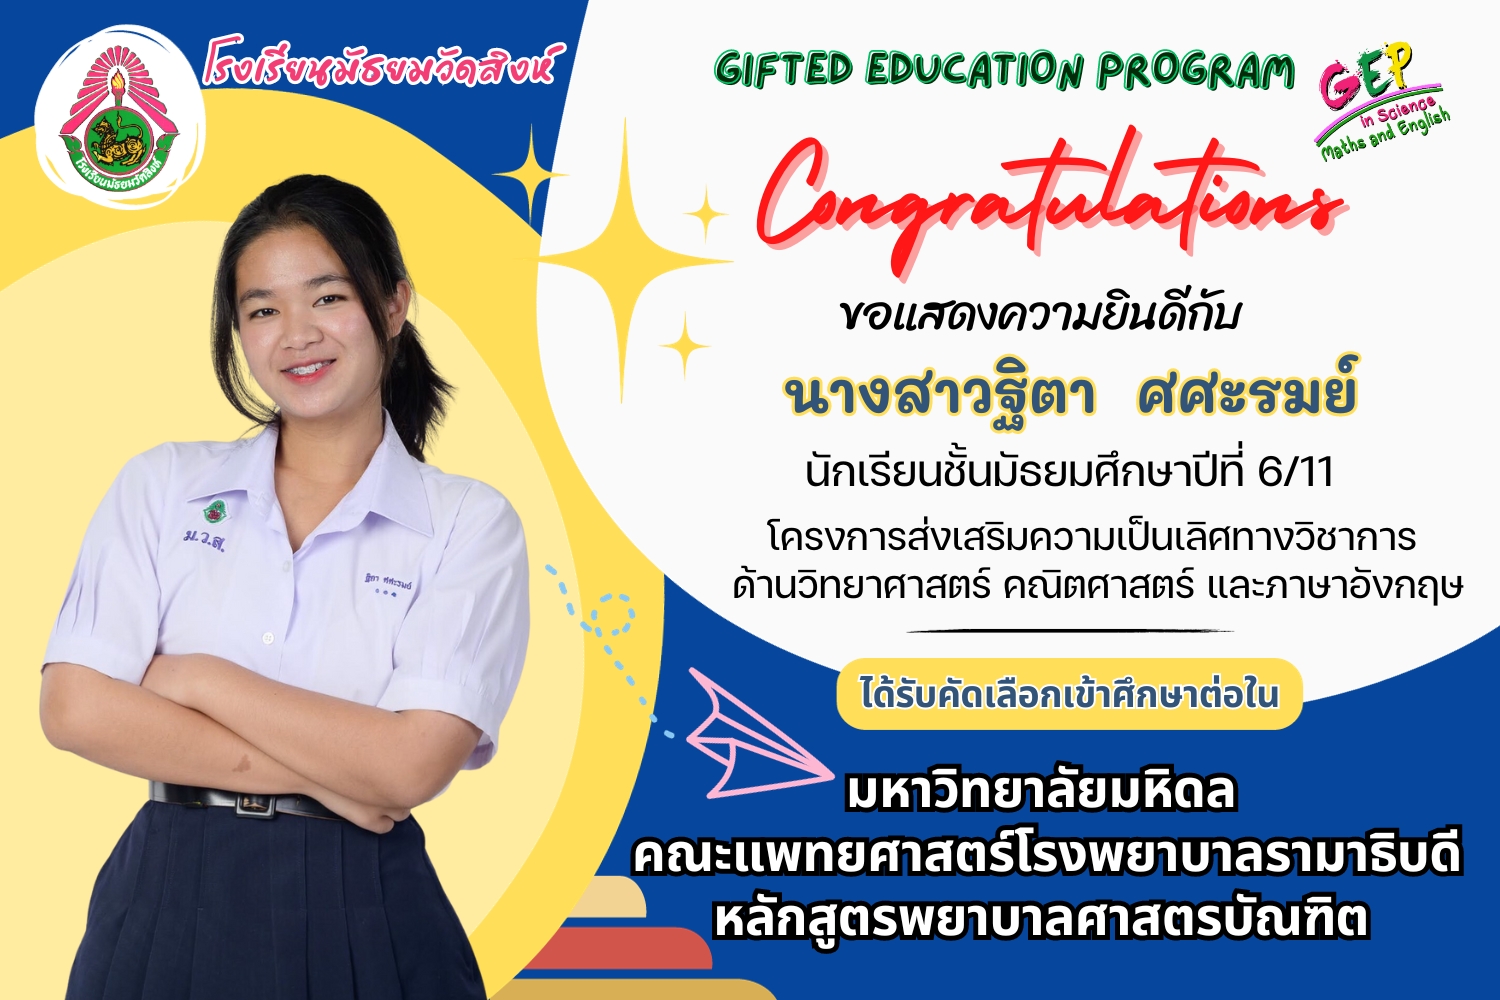 ขอแสดงความยินดีกับนักเรียนที่ได้รับคัดเลือกเข้าศึกษาต่อระดับอุดมศึกษา ปีการศึกษา 2567